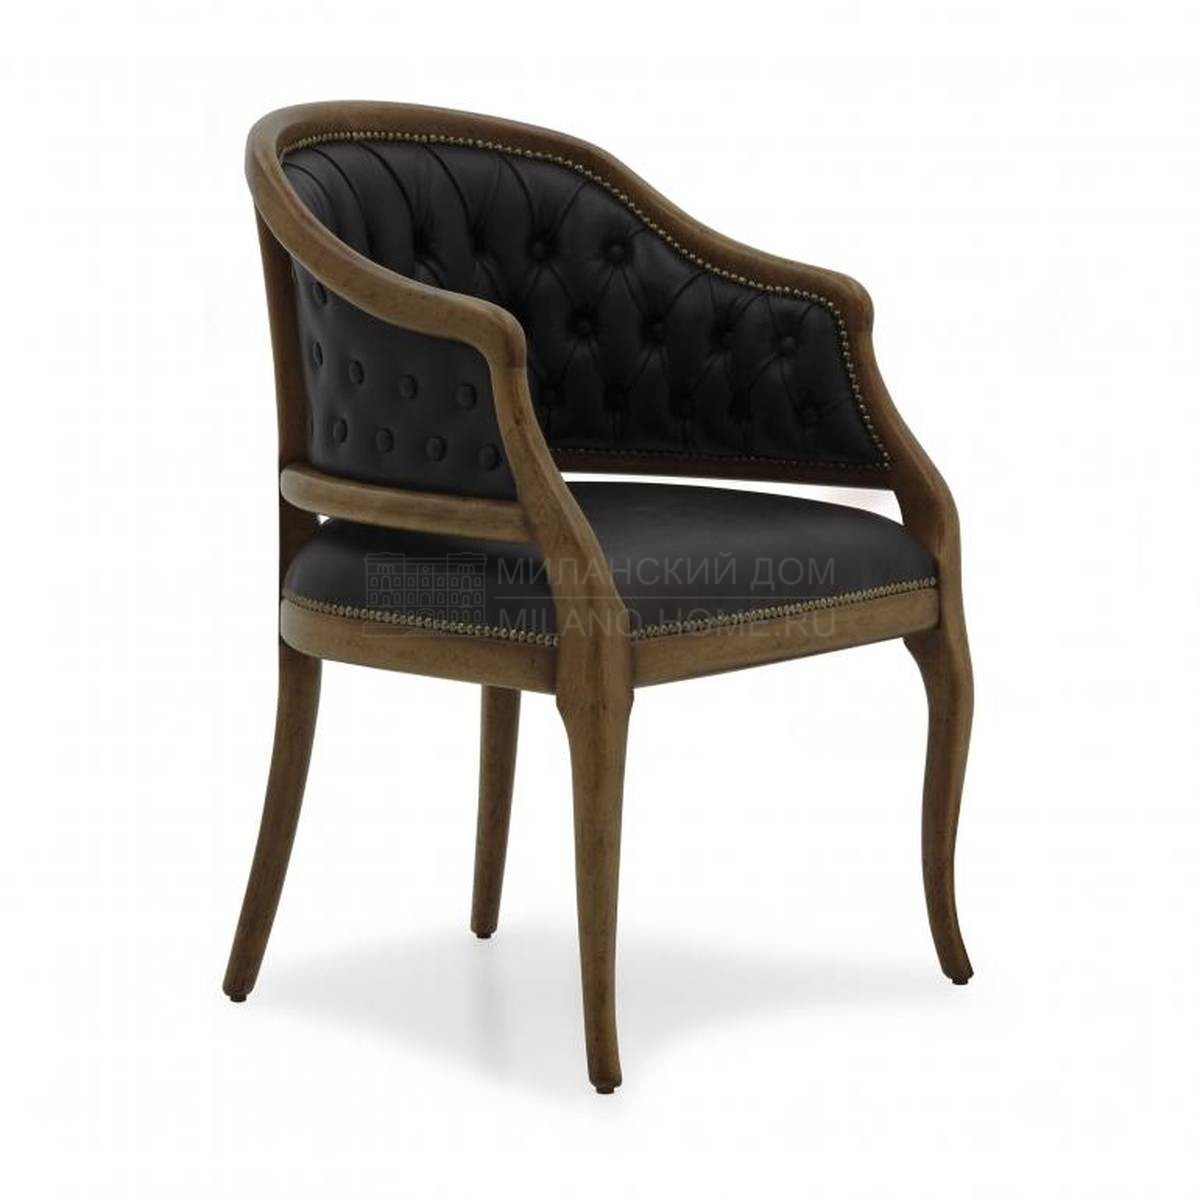 Кожаное кресло Beatrice leather из Италии фабрики SEVEN SEDIE